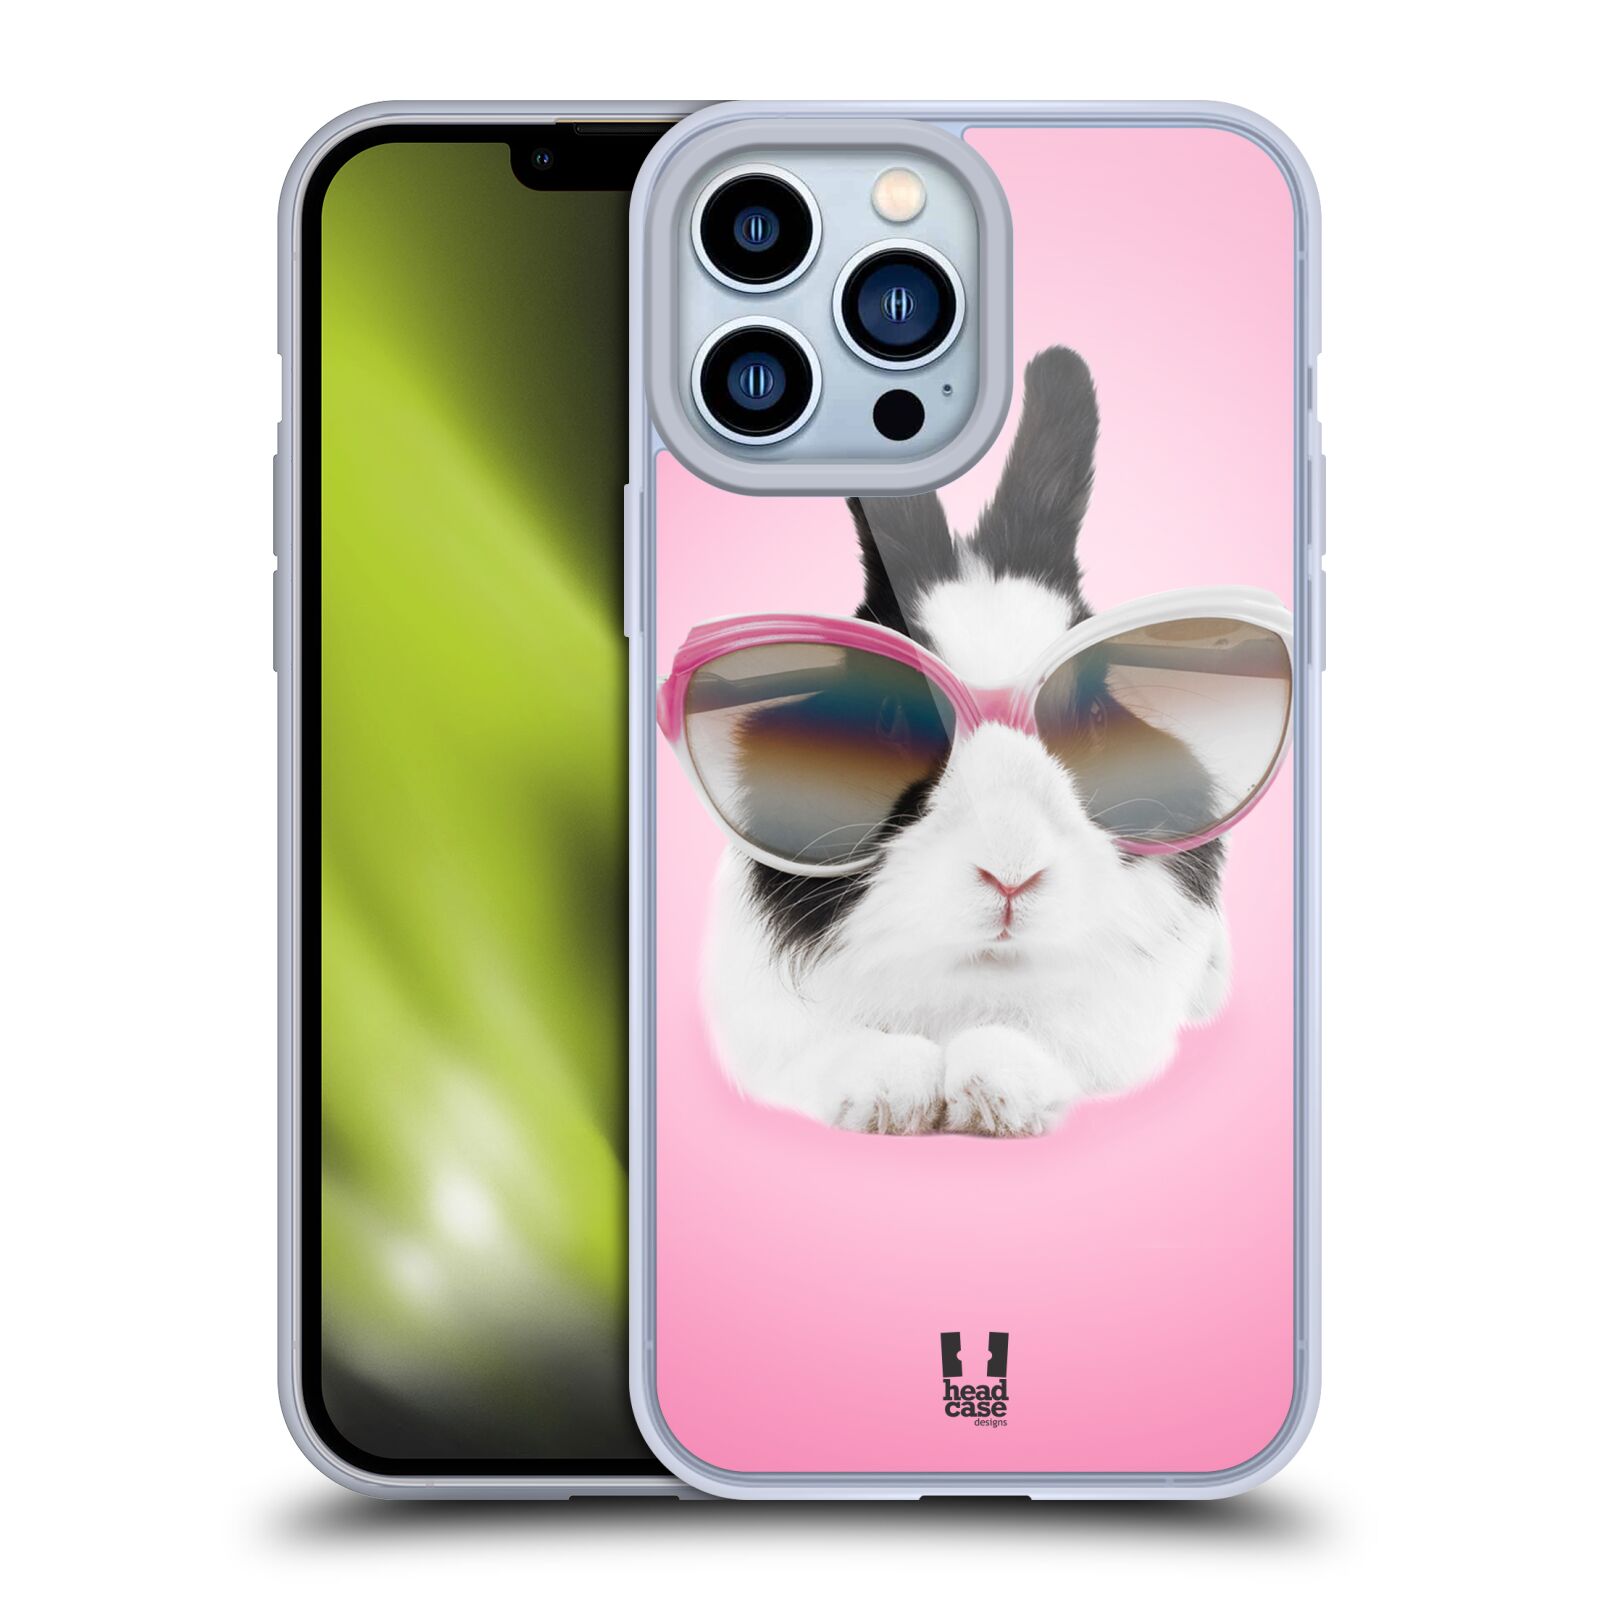 Plastový obal HEAD CASE na mobil Apple Iphone 13 PRO MAX vzor Legrační zvířátka roztomilý králíček s brýlemi růžová